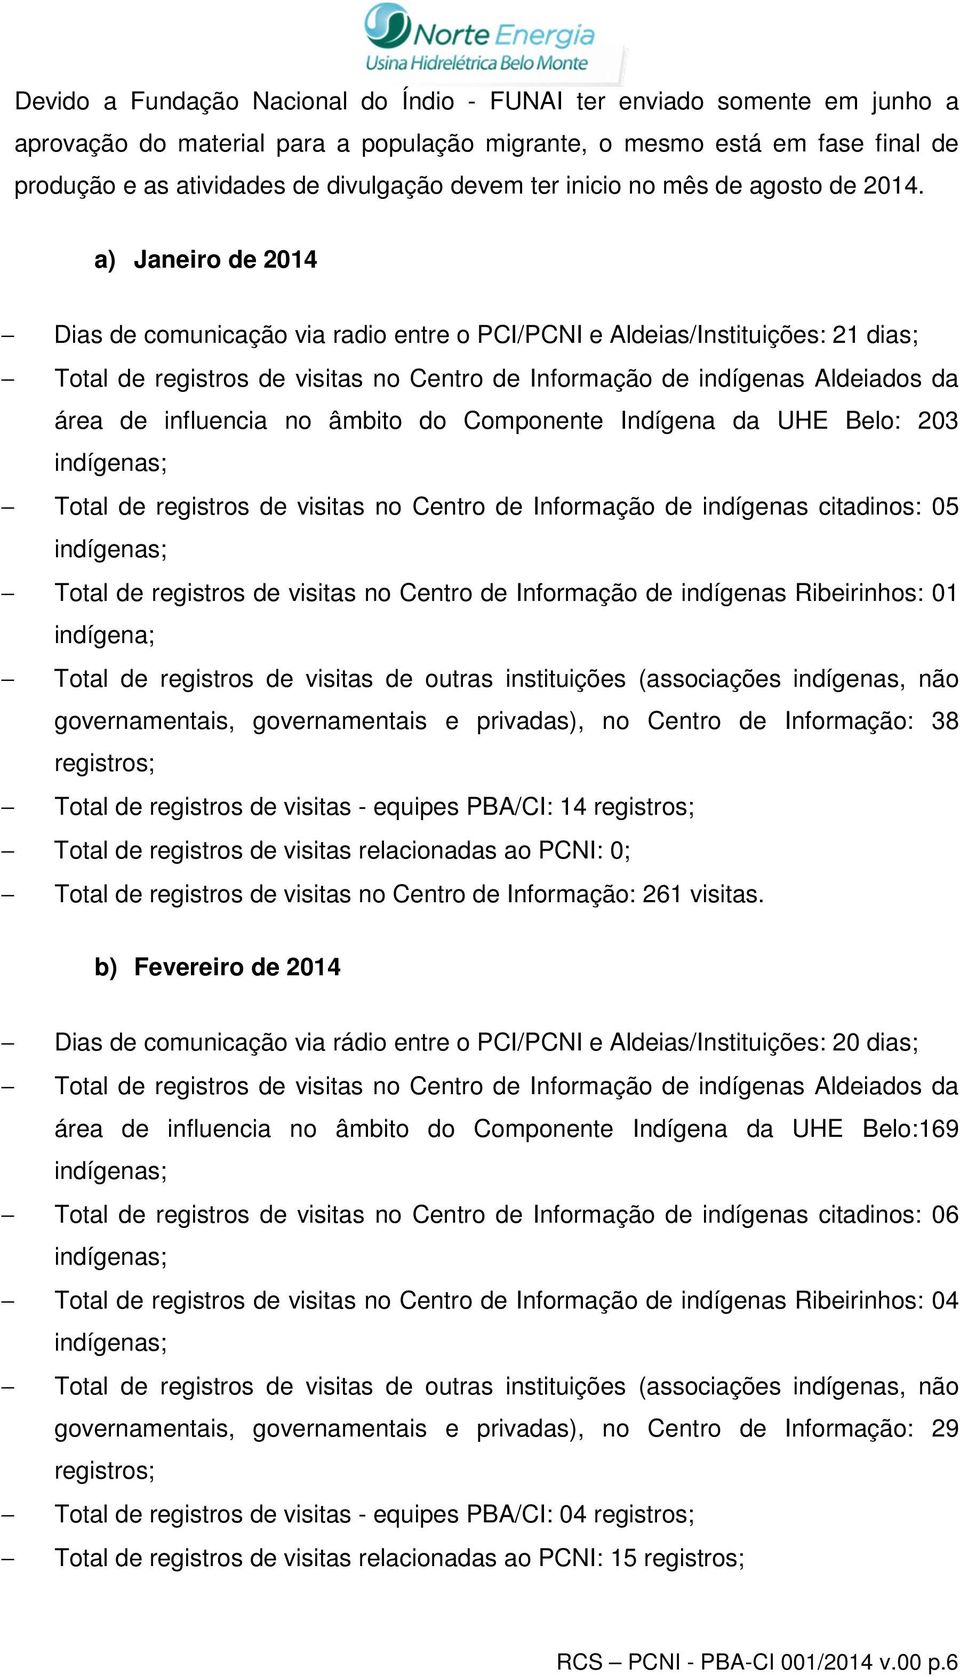 a) Janeiro de 2014 Dias de comunicação via radio entre o PCI/PCNI e Aldeias/Instituições: 21 dias; Total de registros de visitas no Centro de Informação de indígenas Aldeiados da área de influencia